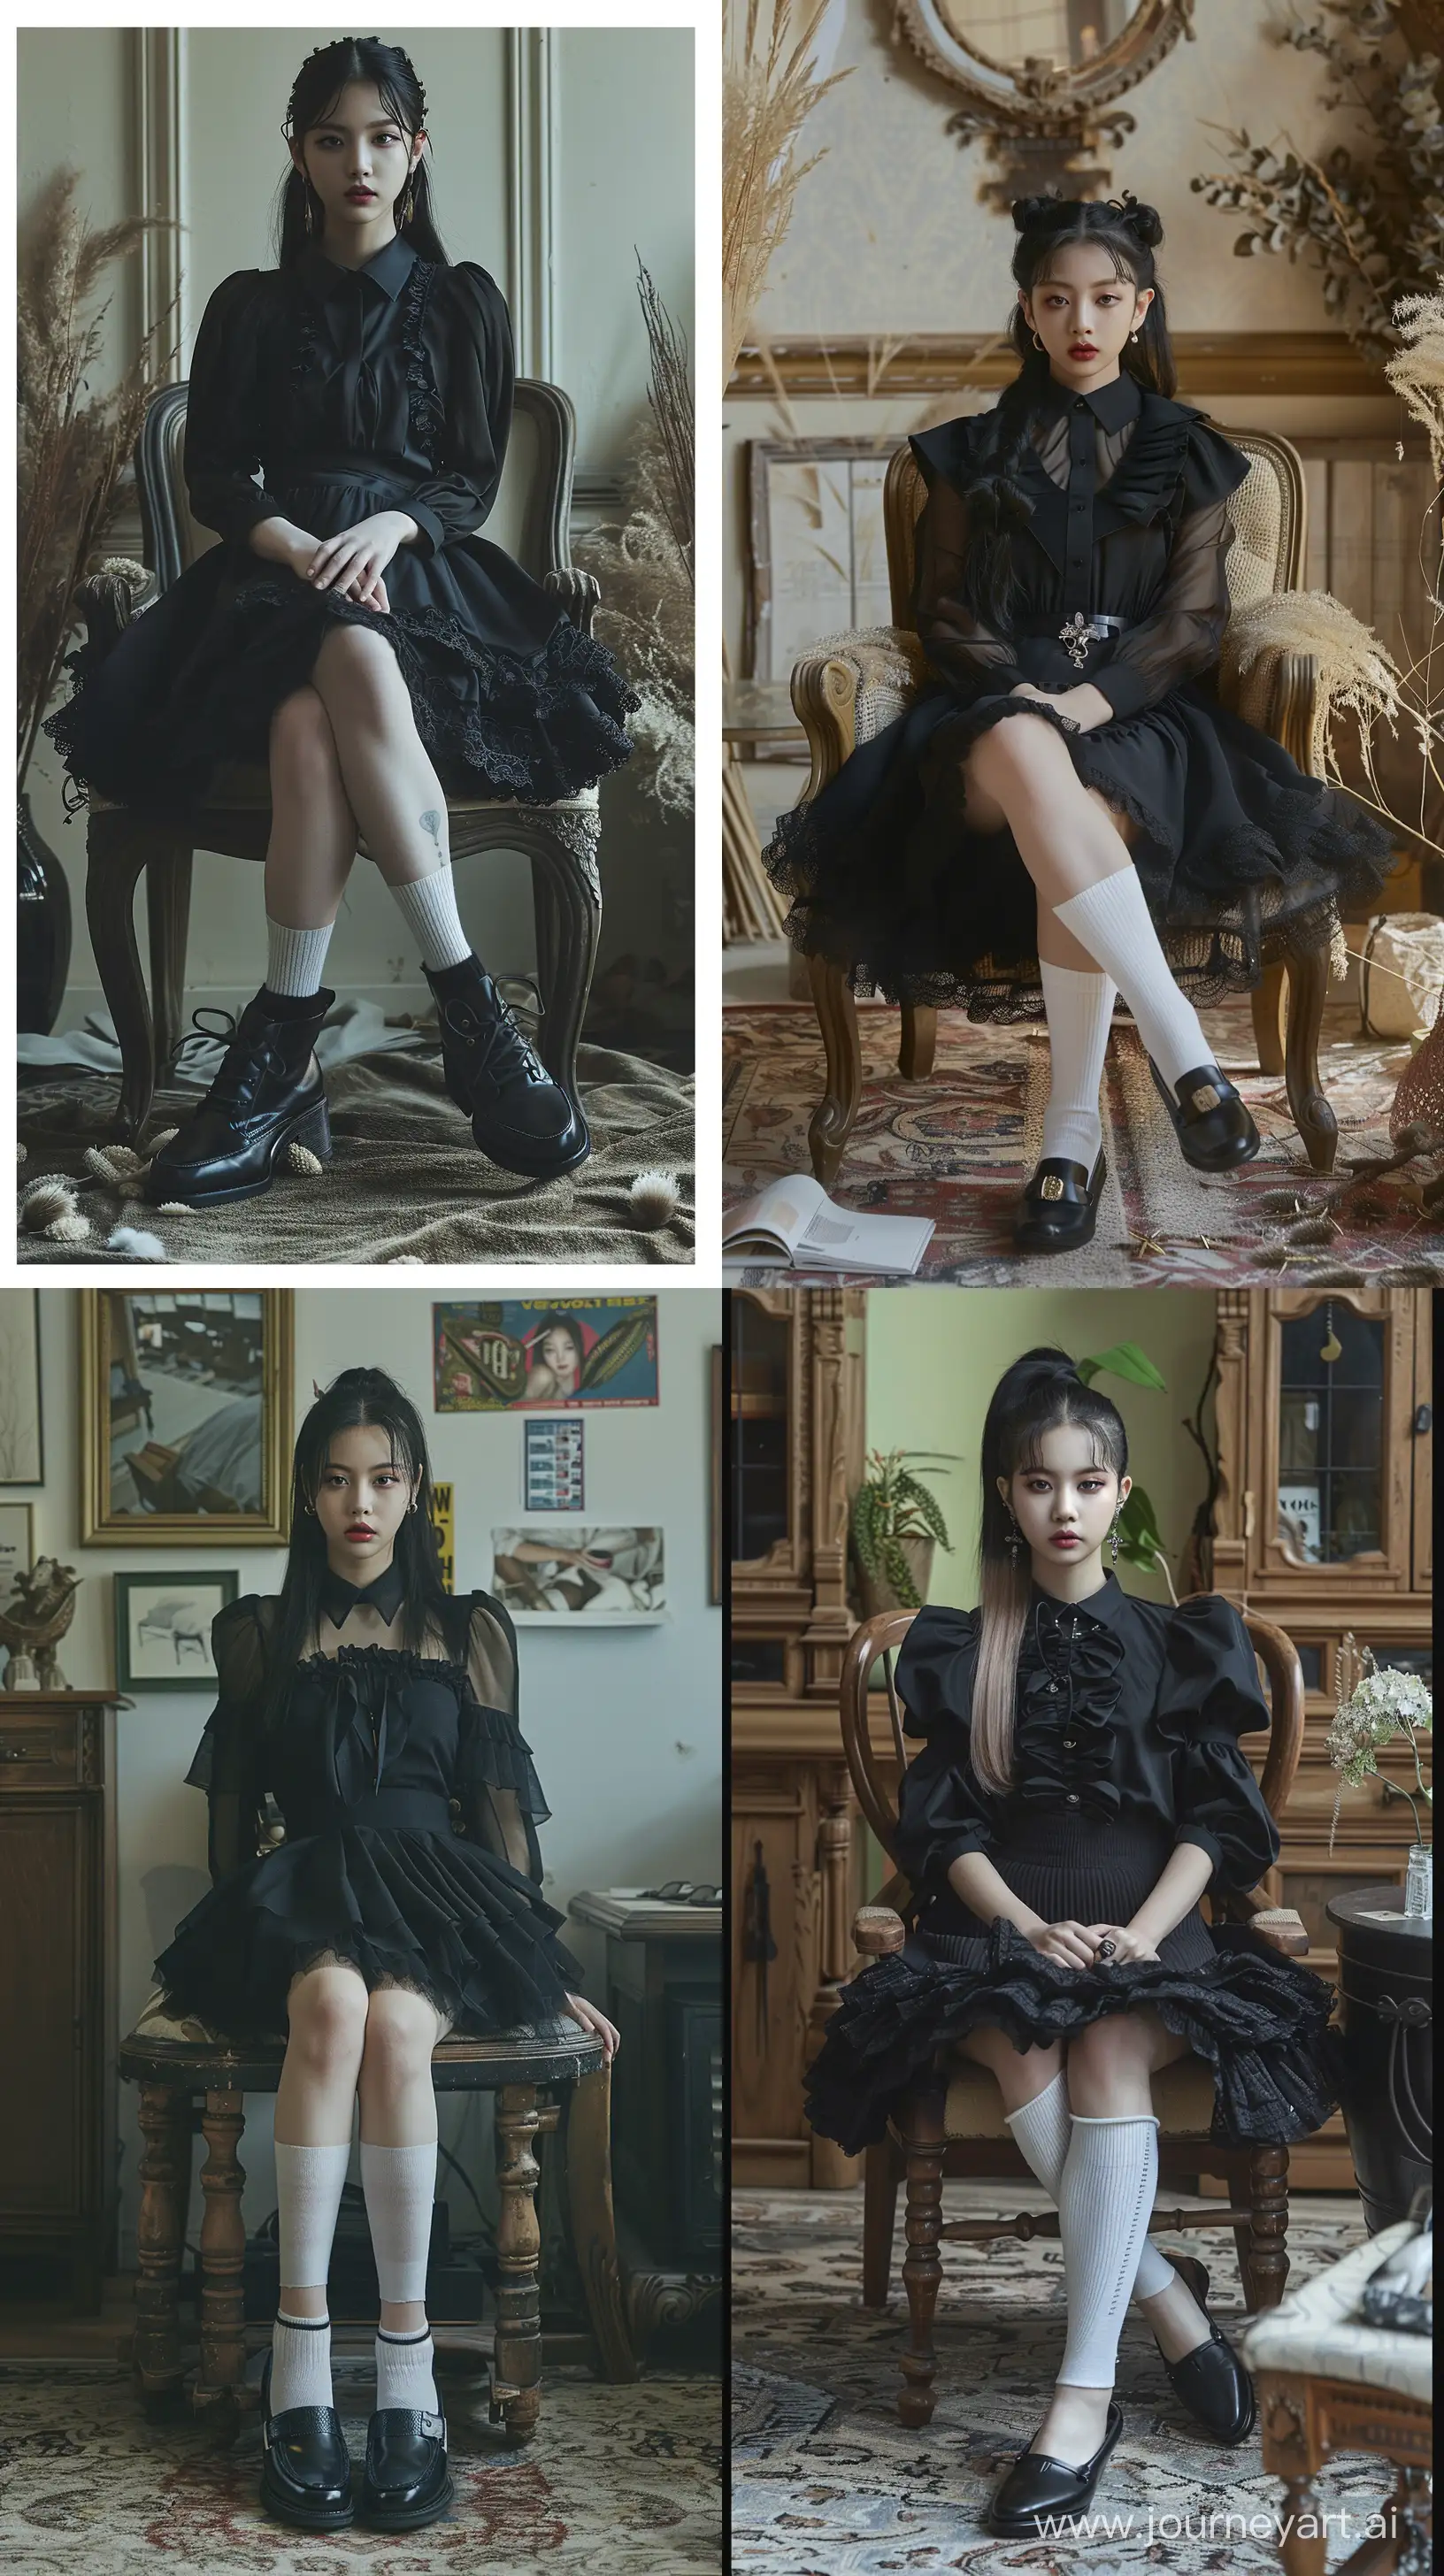 Jennie-Blackpink-Fashion-Mysterious-Nocturnal-Elegance-in-Vogue-Studio